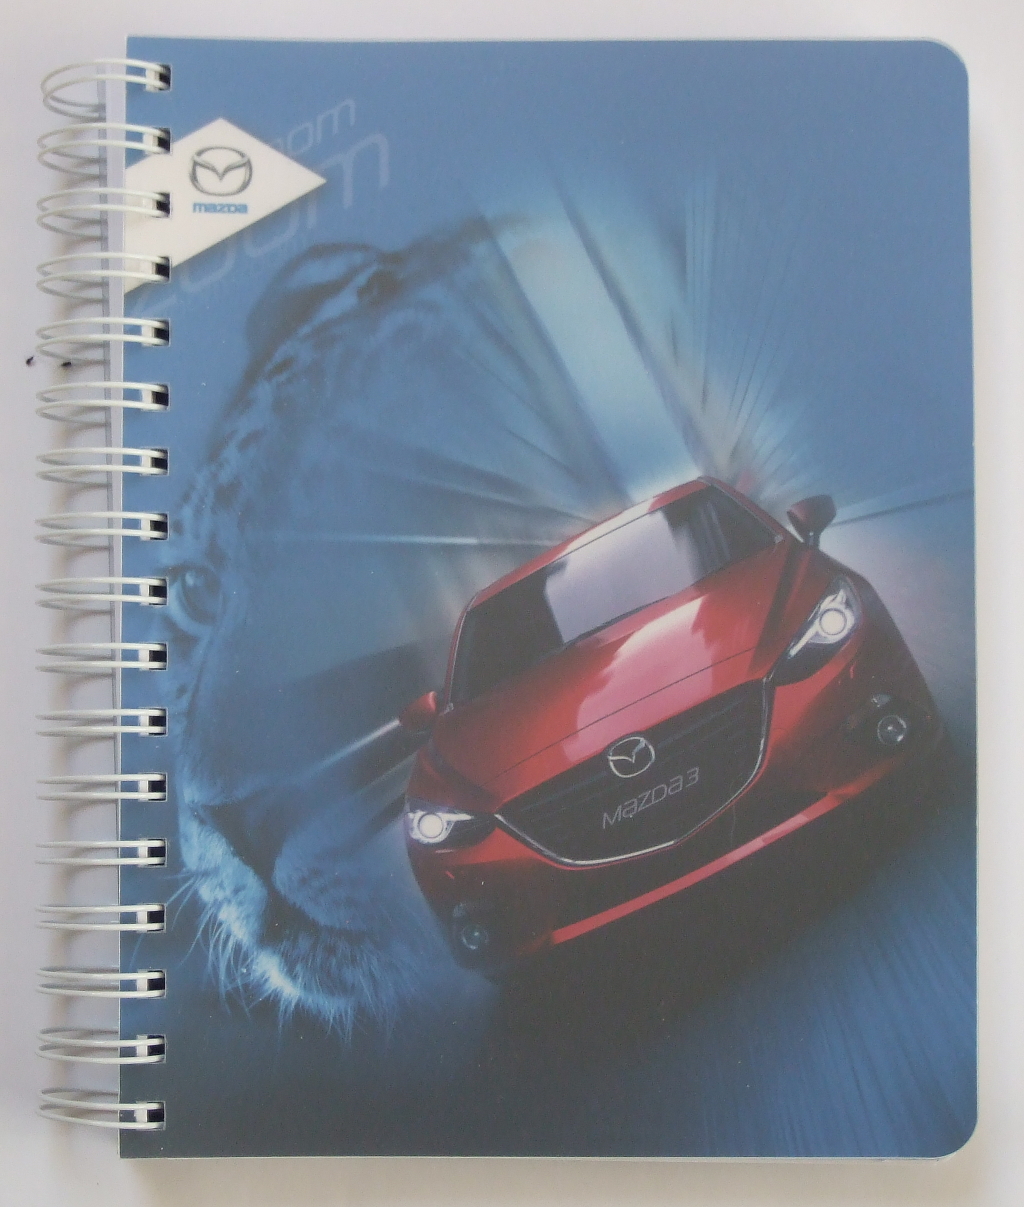 Печать ежедневников «Mazda». Полиграфия типографии Макрос, изготовление ежедневников, спецификация 952993-1